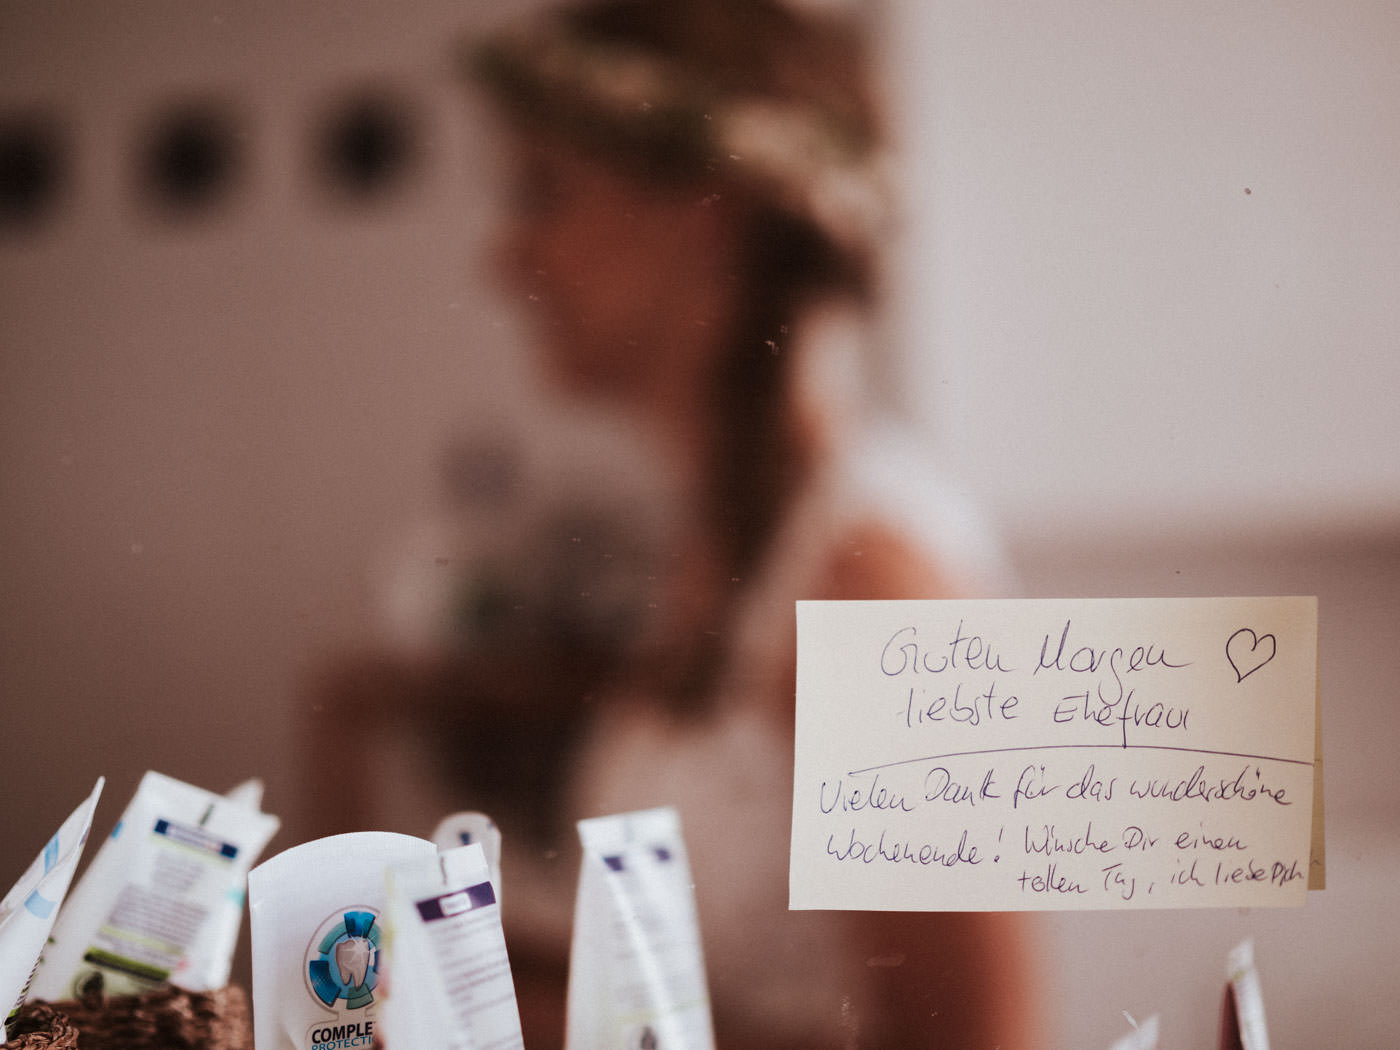 Nachricht vom Bräutigam auf einem PostIt am Spiegel im Bad, Braut ist im Spiegel unscharf zu erkennen - kurz vor der Hochzeit auf Weingut Weidenmühle